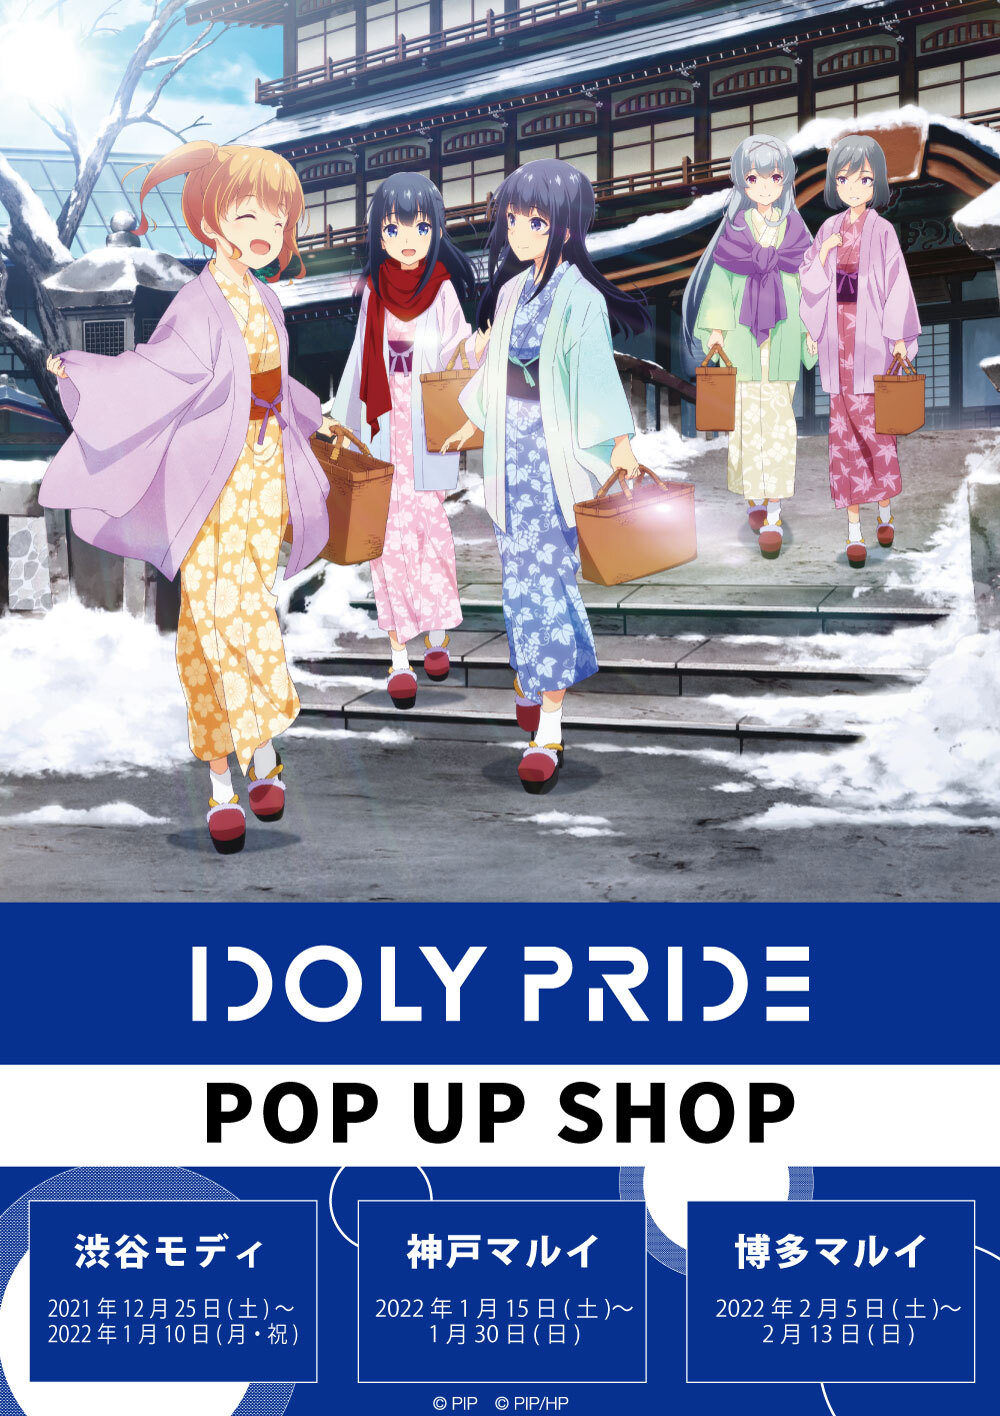 Idoly Prideポップアップショップ がマルイ モディにて開催 Idoly Pride 公式サイト